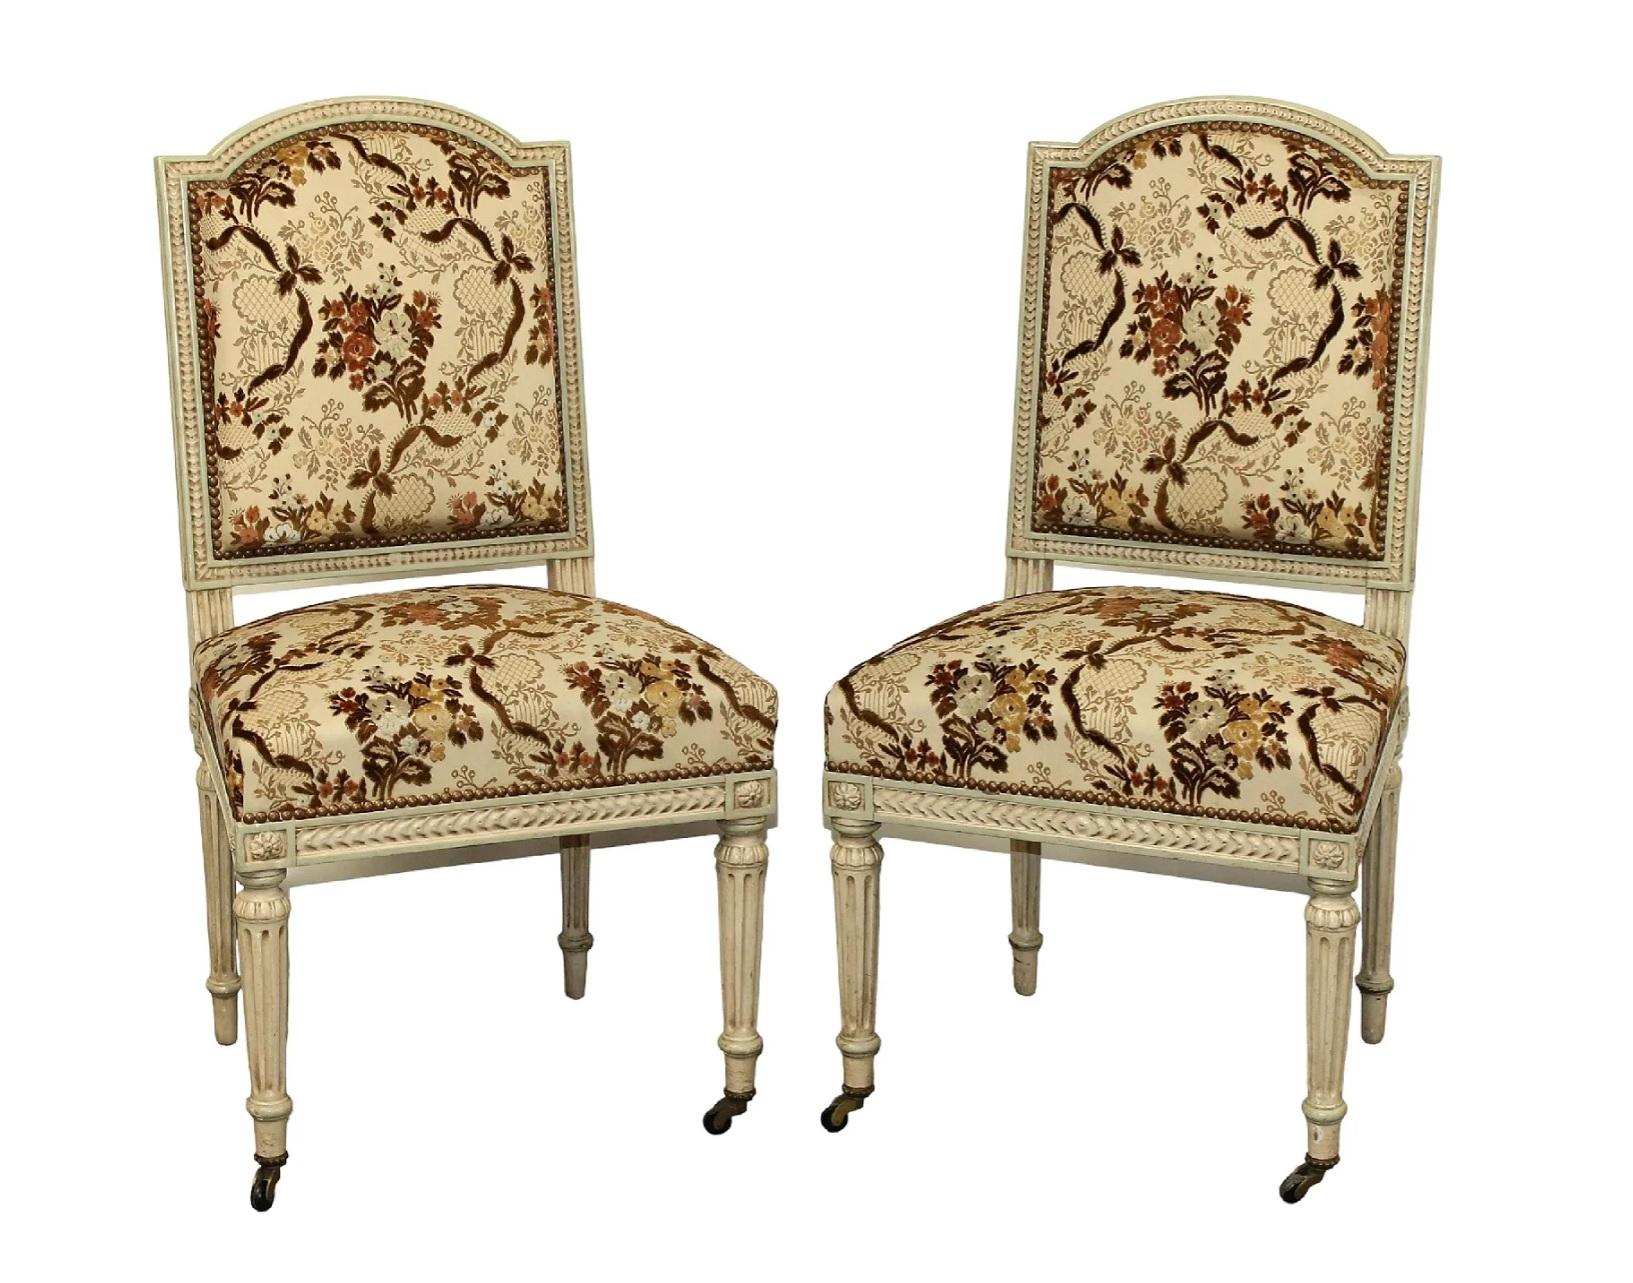 Zwei bemalte französische Beistellstühle im Louis-XVI-Stil auf kannelierten Beinen. Die Sitze und Rückenlehnen sind mit einem braunen/braunen/cremefarbenen, geblümten Stoff mit geschnittenen Samtdetails gepolstert, in sehr gutem Zustand.